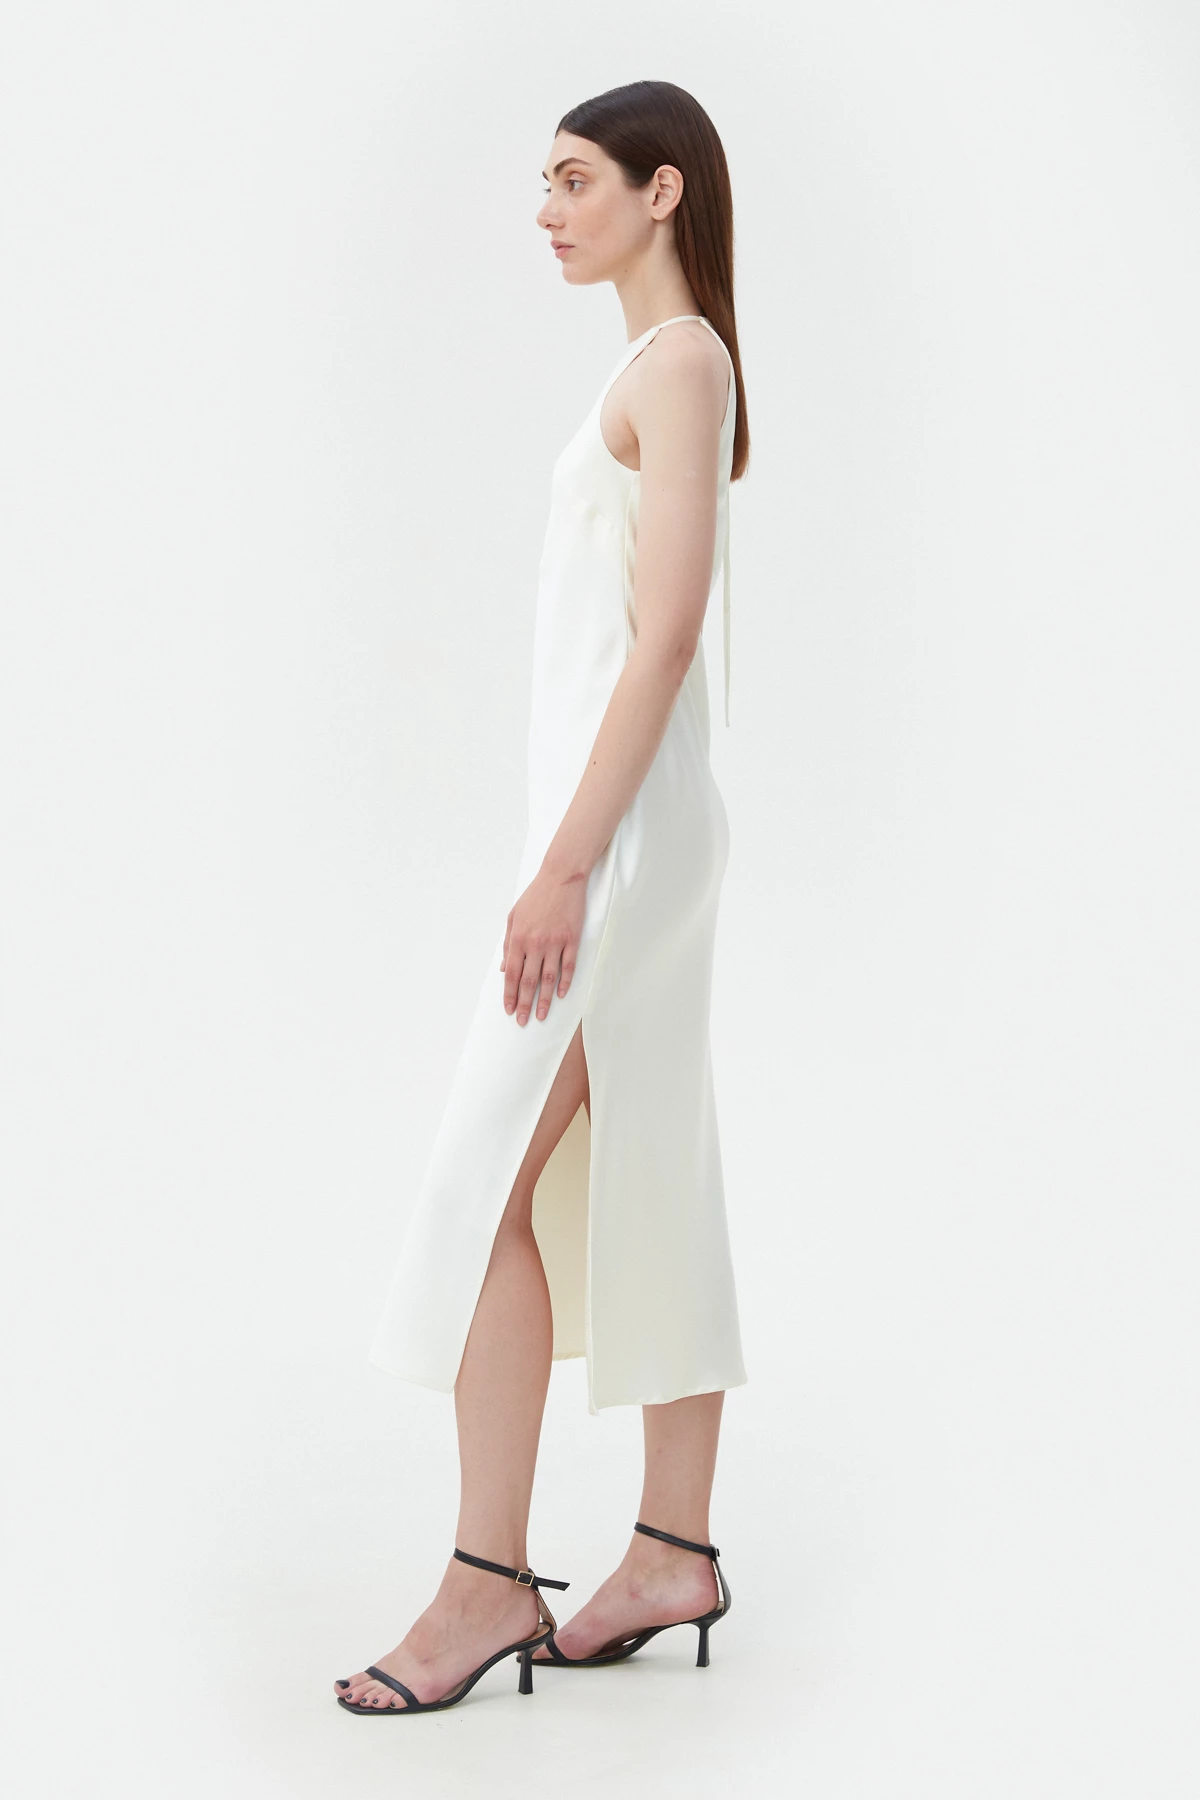 White slip satin dress, photo 2